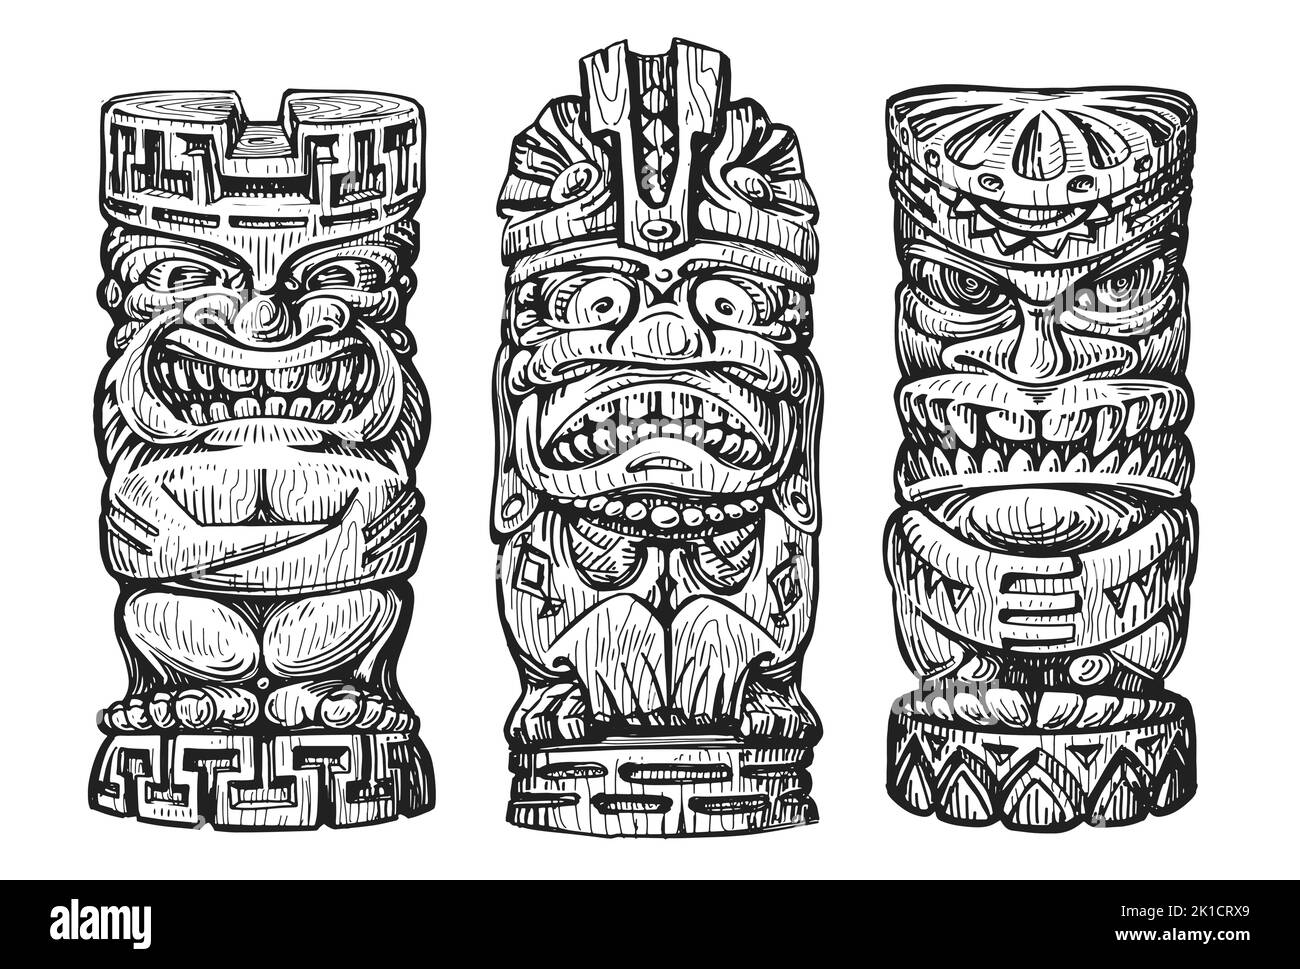 Croquis de masques tiki en bois d'Hawaï. Idole ethnique traditionnelle hawaïenne ou maorie. Totem tribal polynésien Illustration de Vecteur